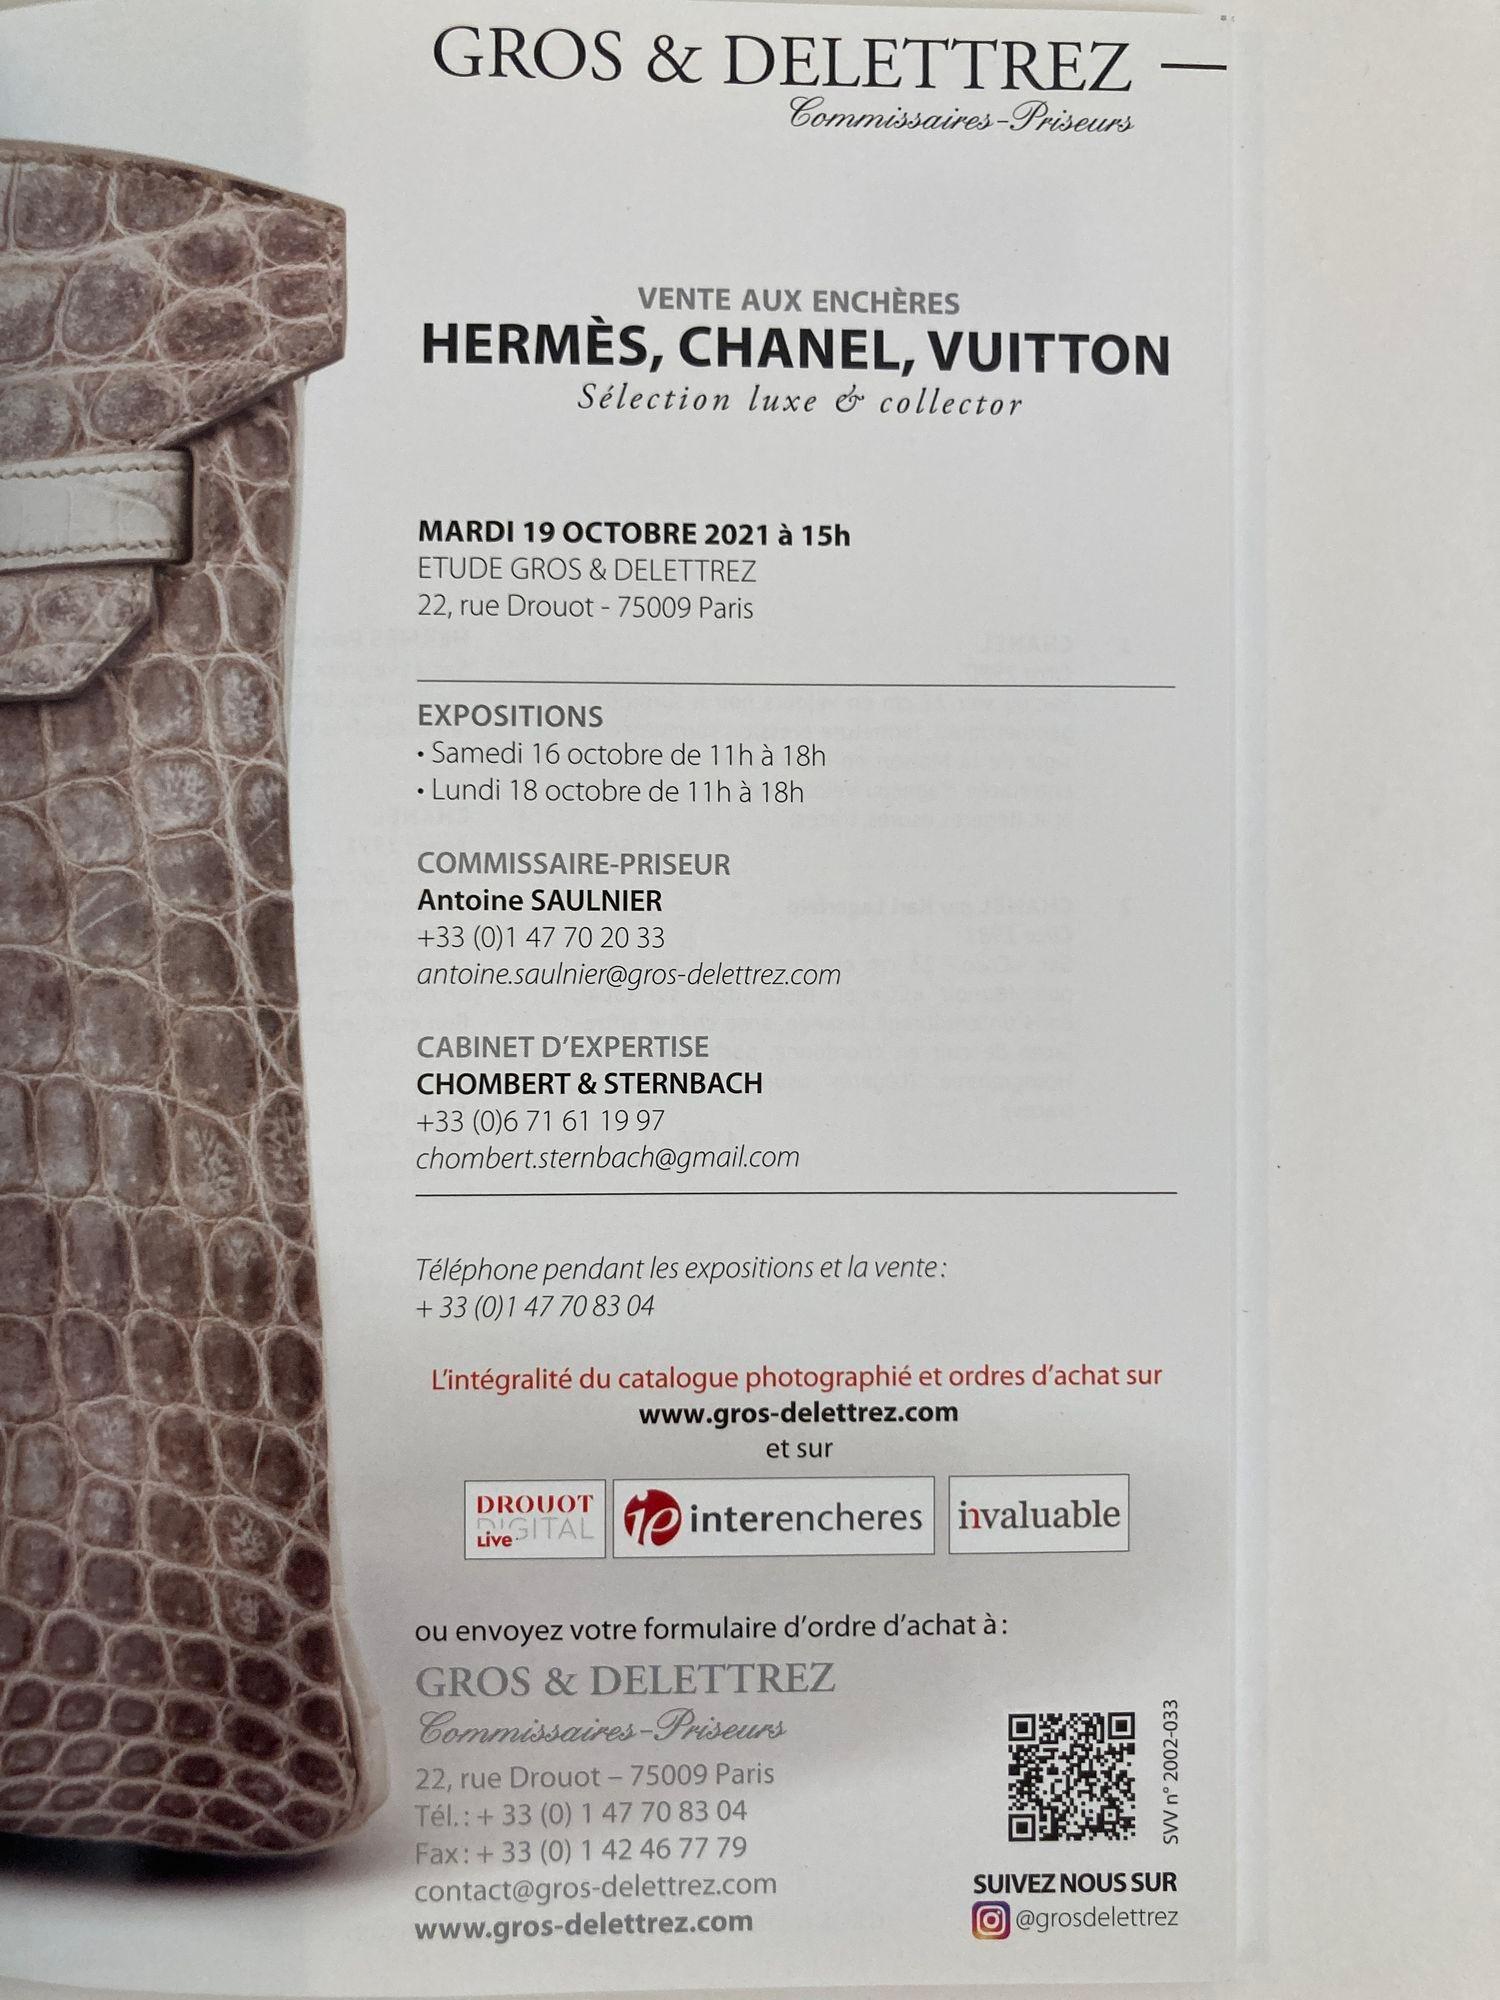 Français Hermès - Catalogue de vente aux enchères Luxe de Chanel Vuitton 2021 par Gros, Delettrez en vente